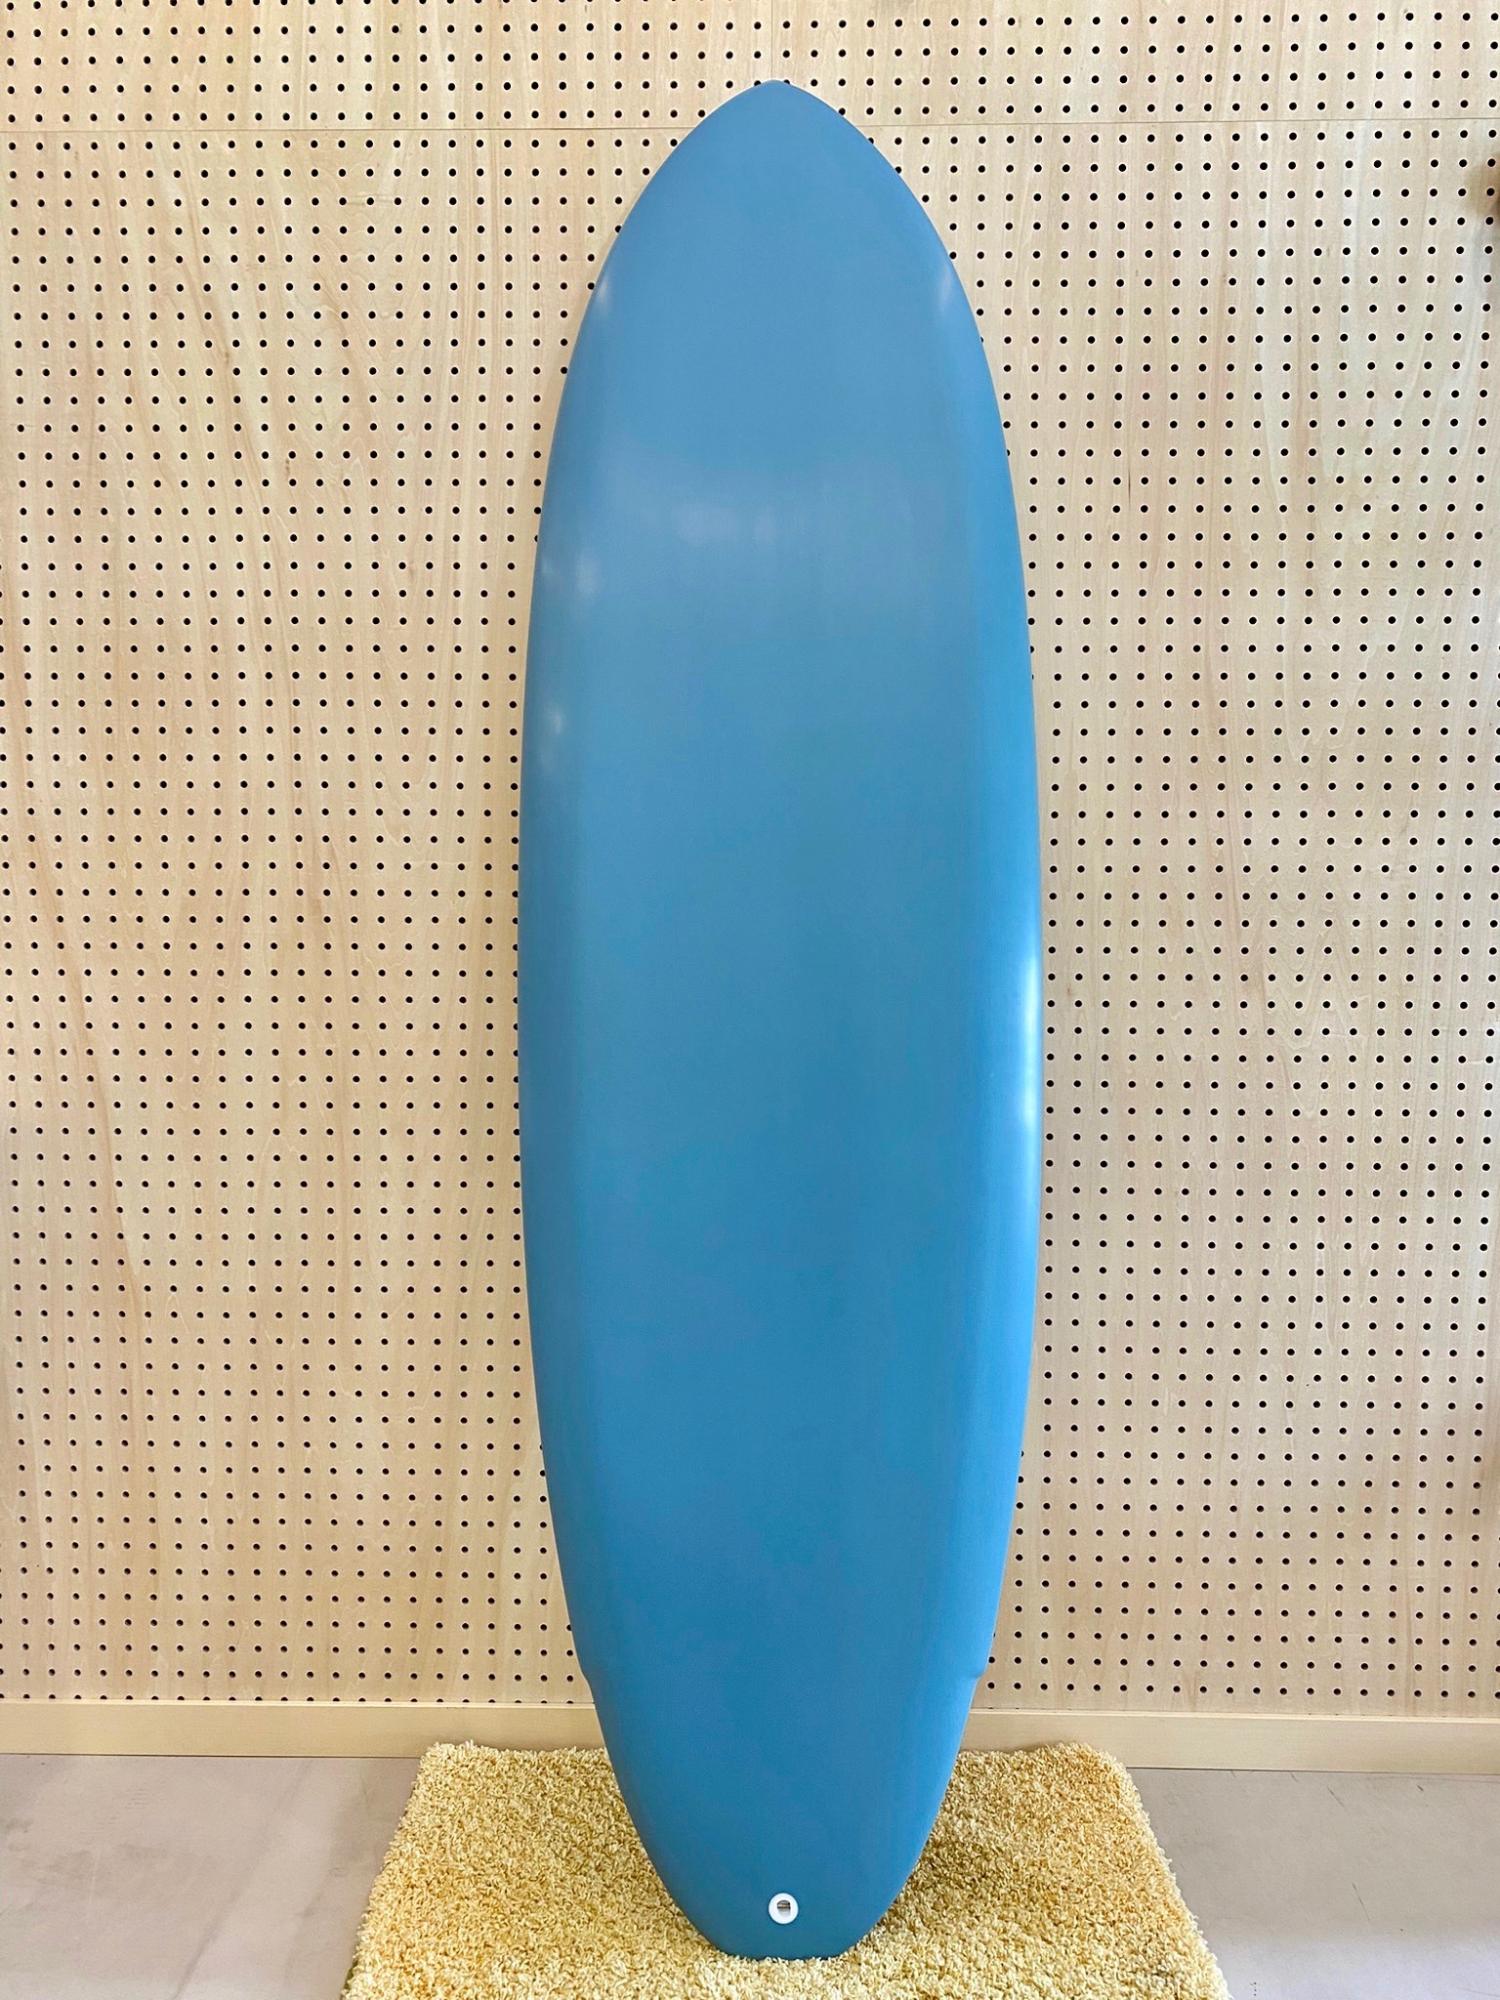 FLOYD PEPPER 6.2 FURROW SURF CRAFT